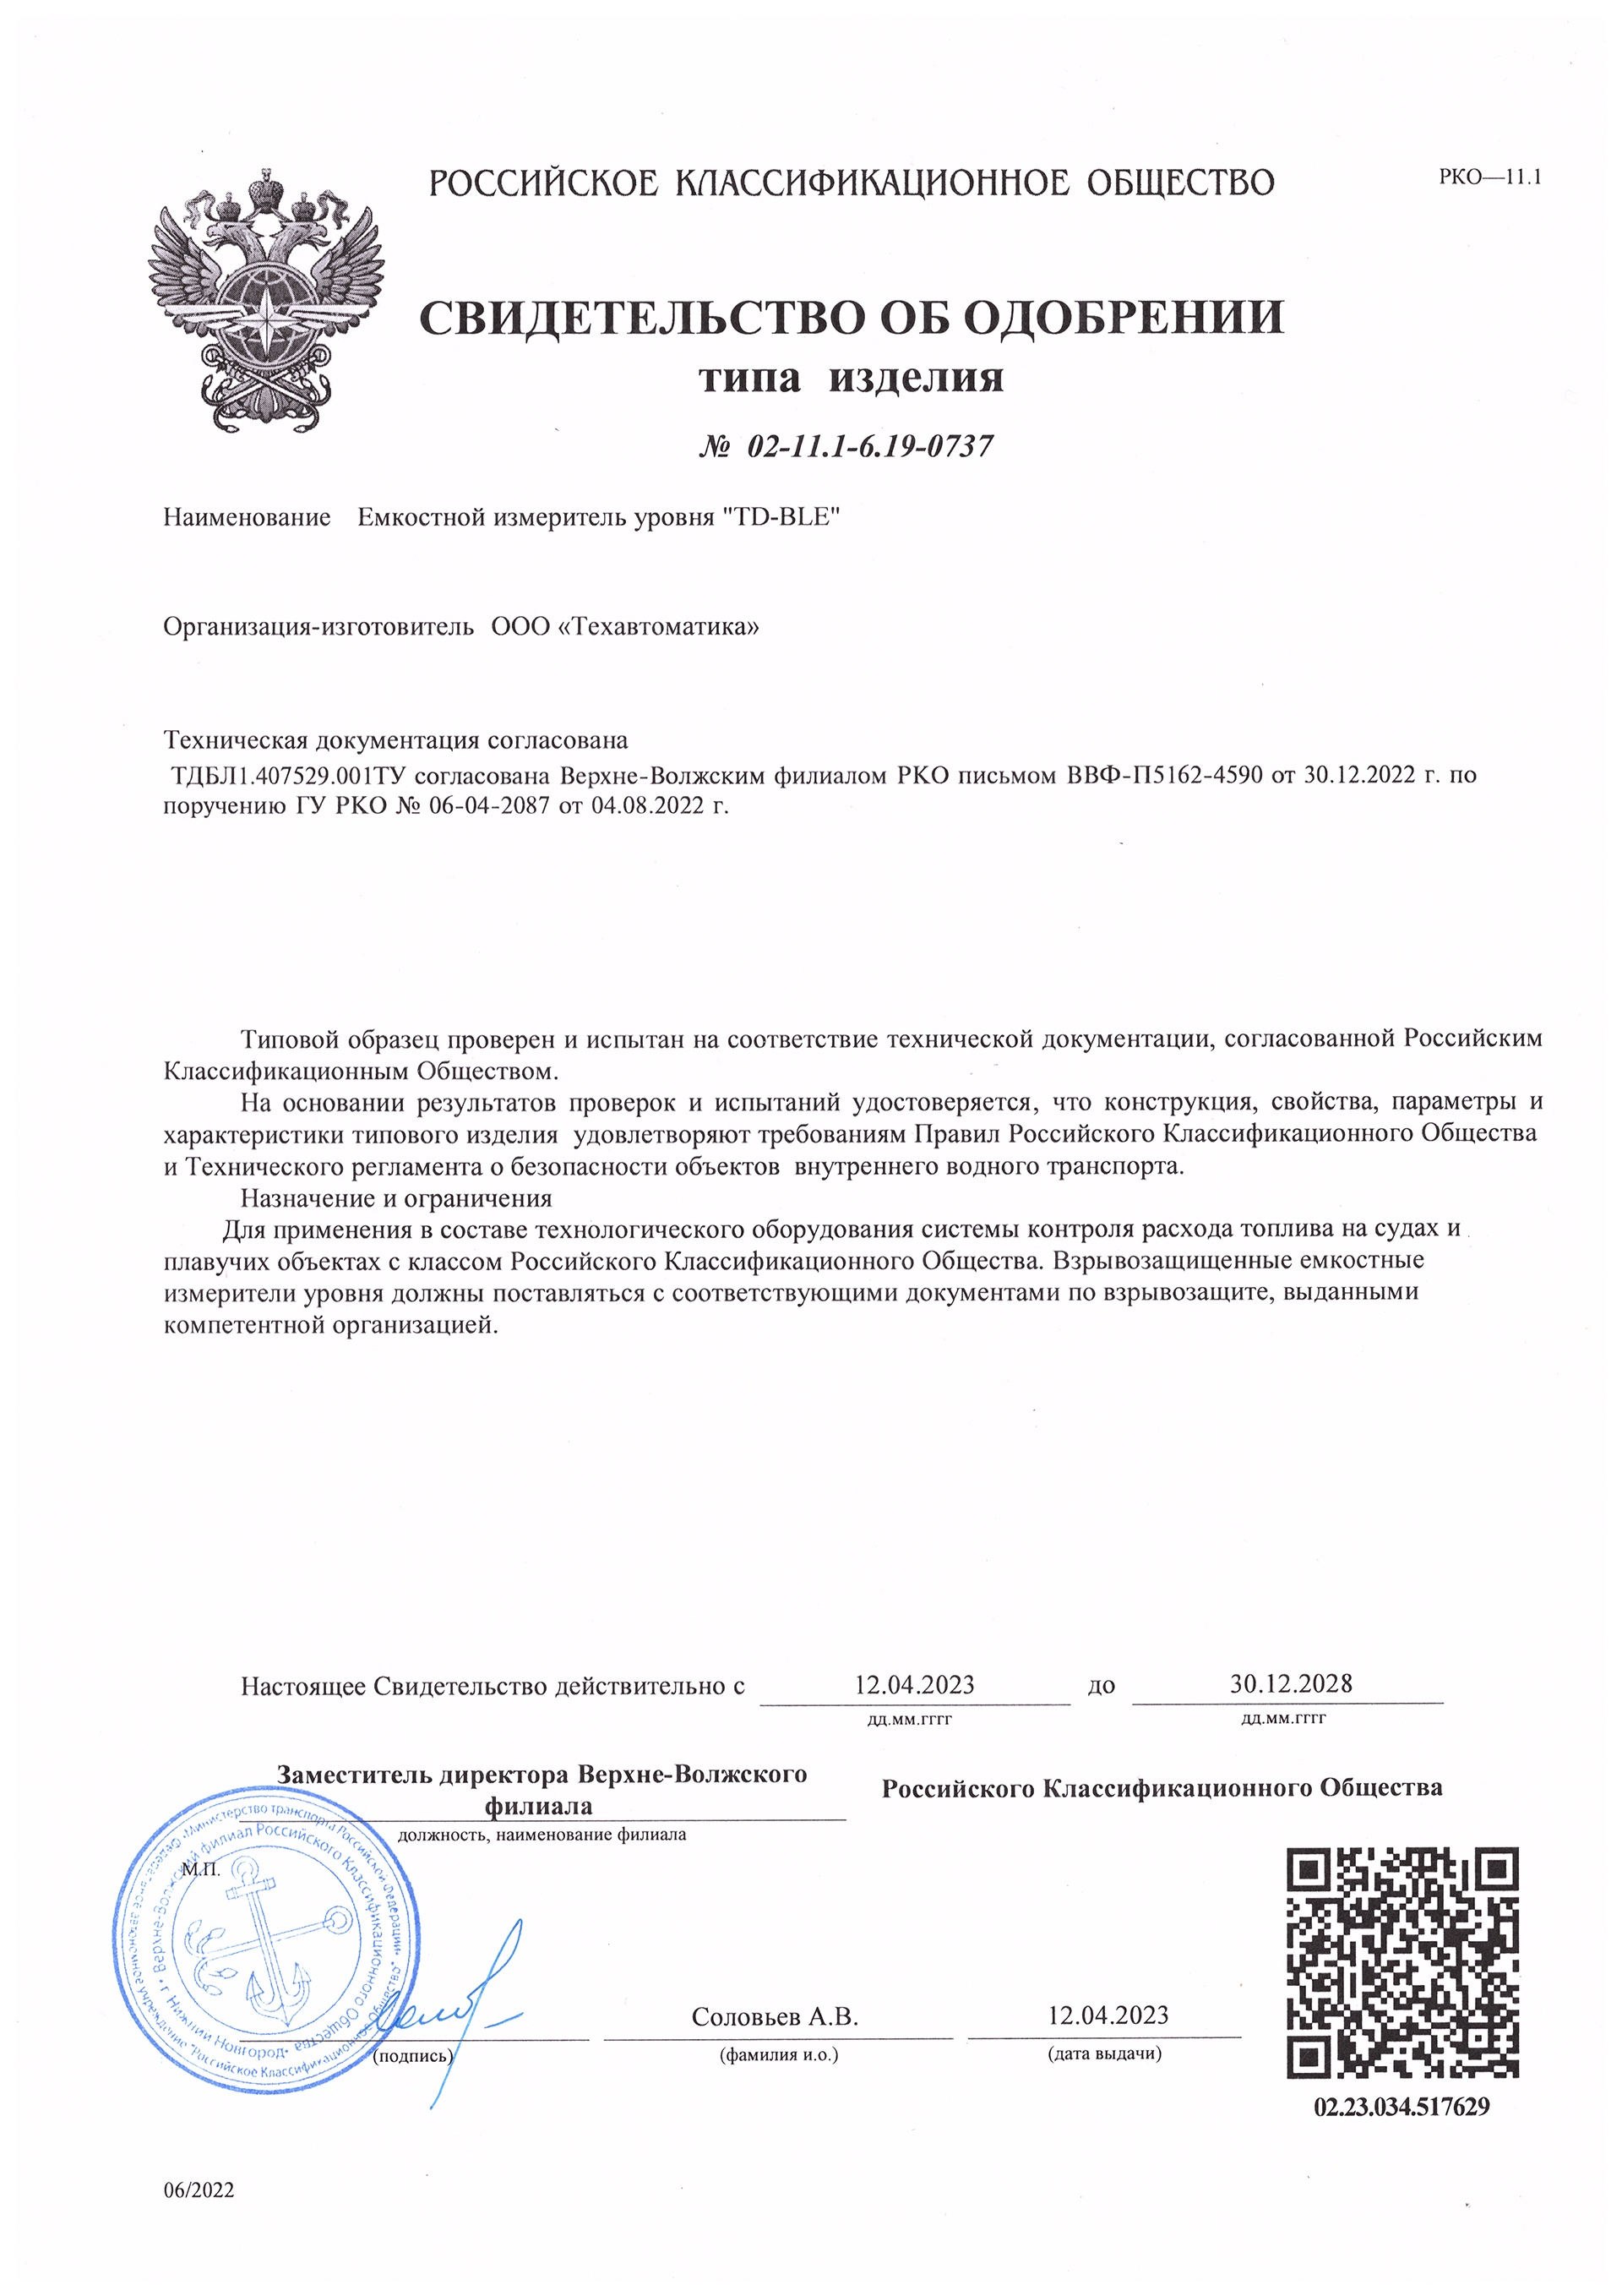 Сертификат речного регистра на беспроводной датчик уровня топлива Эскорт TD-BLE